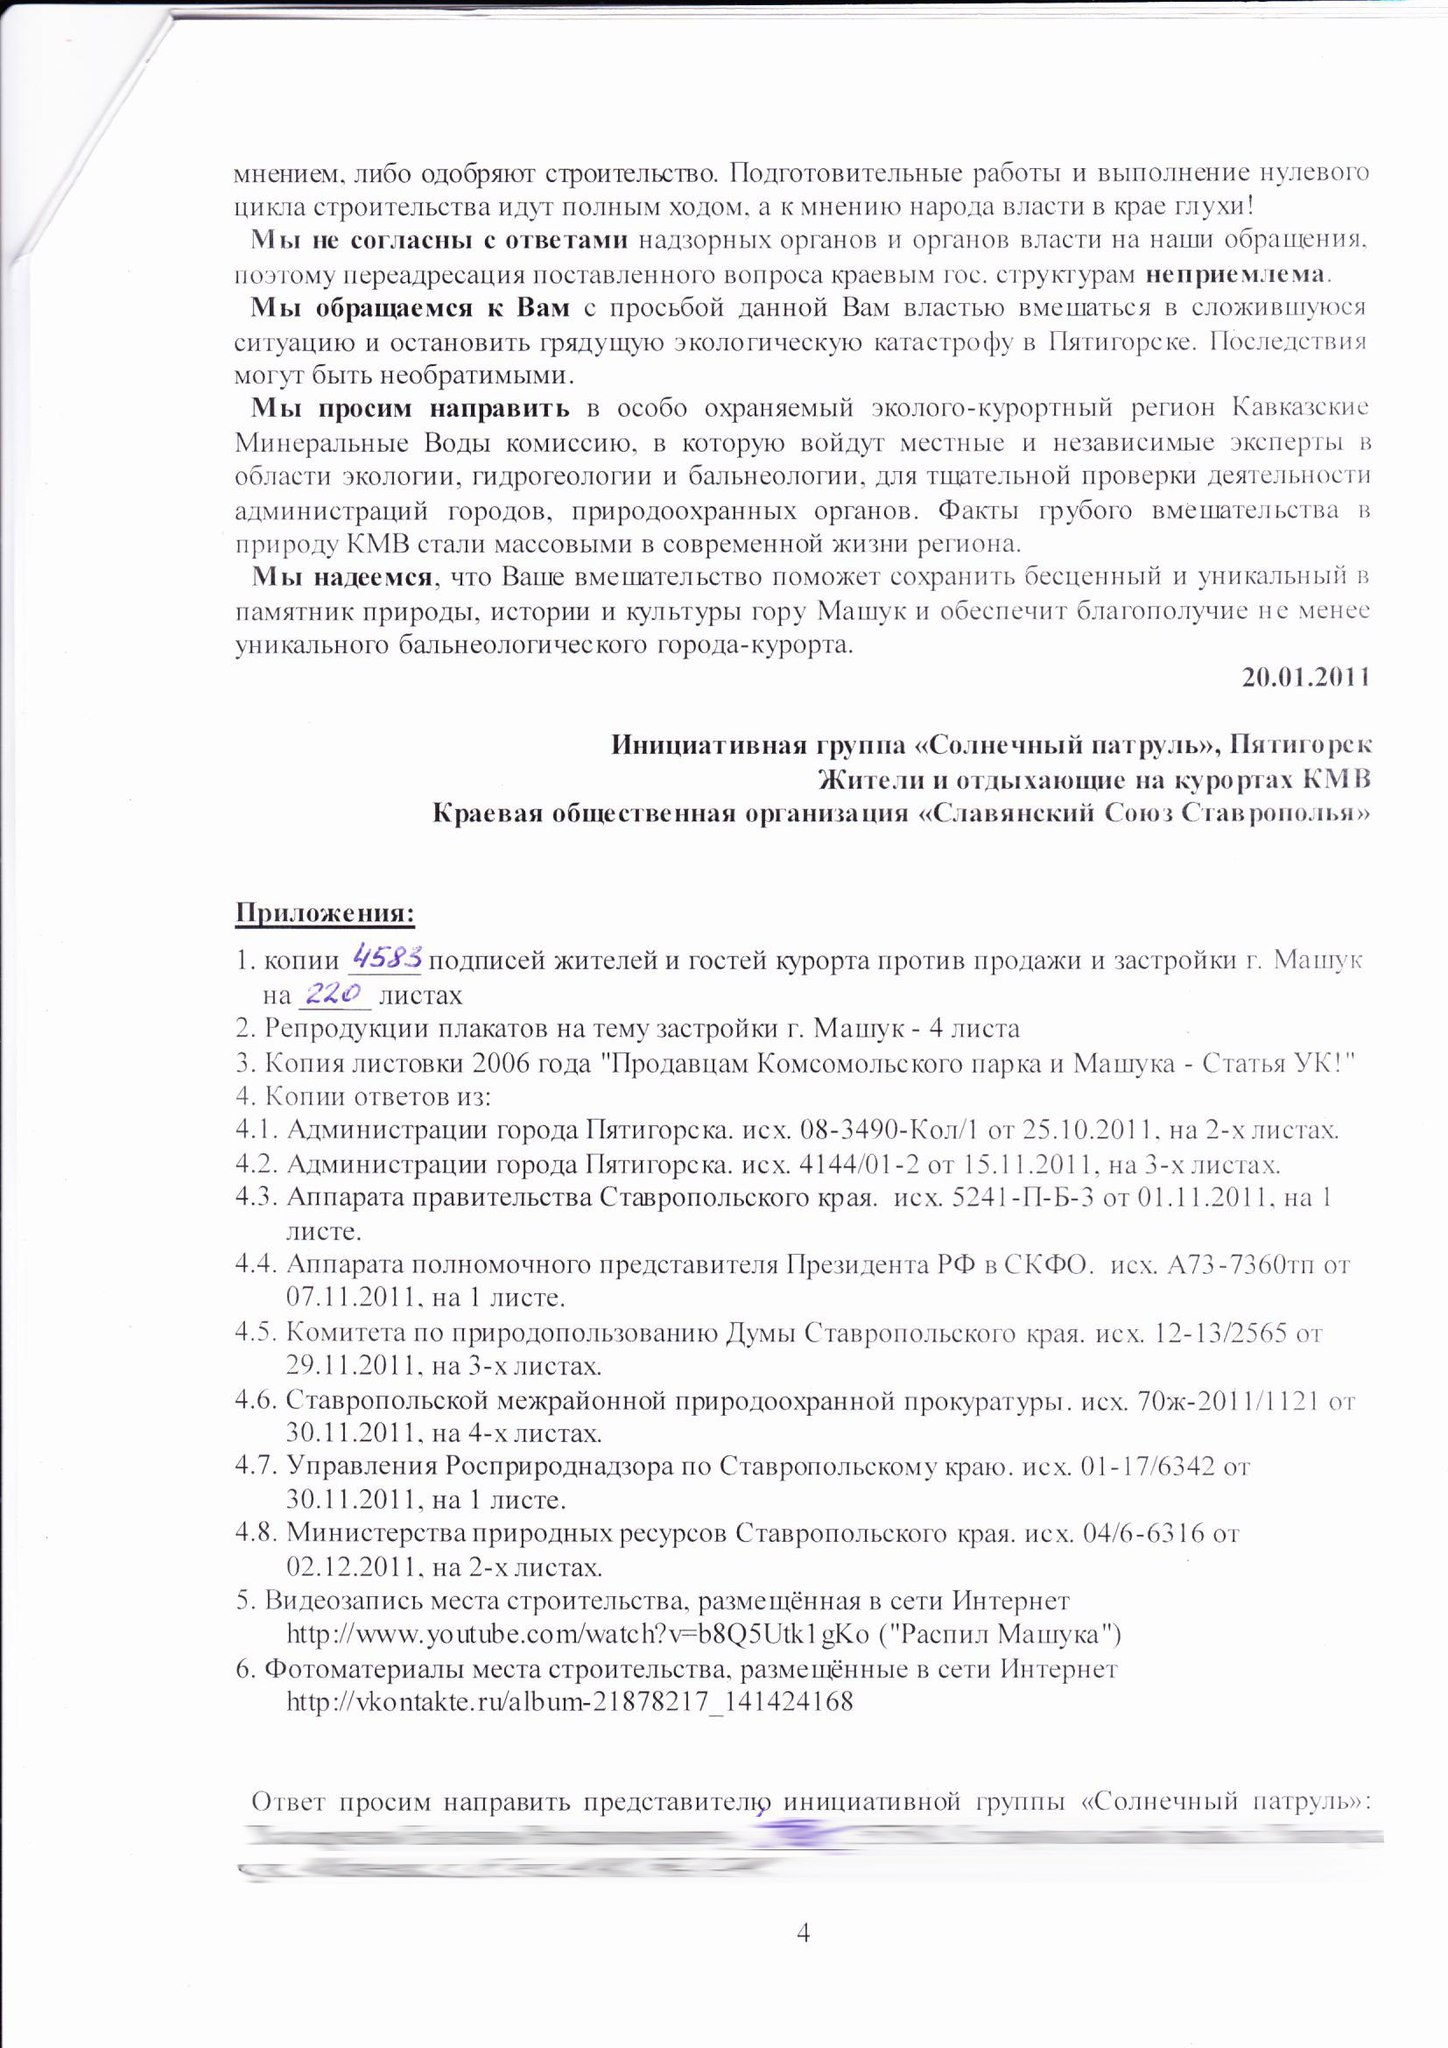 In Pdf Format In Russian 30